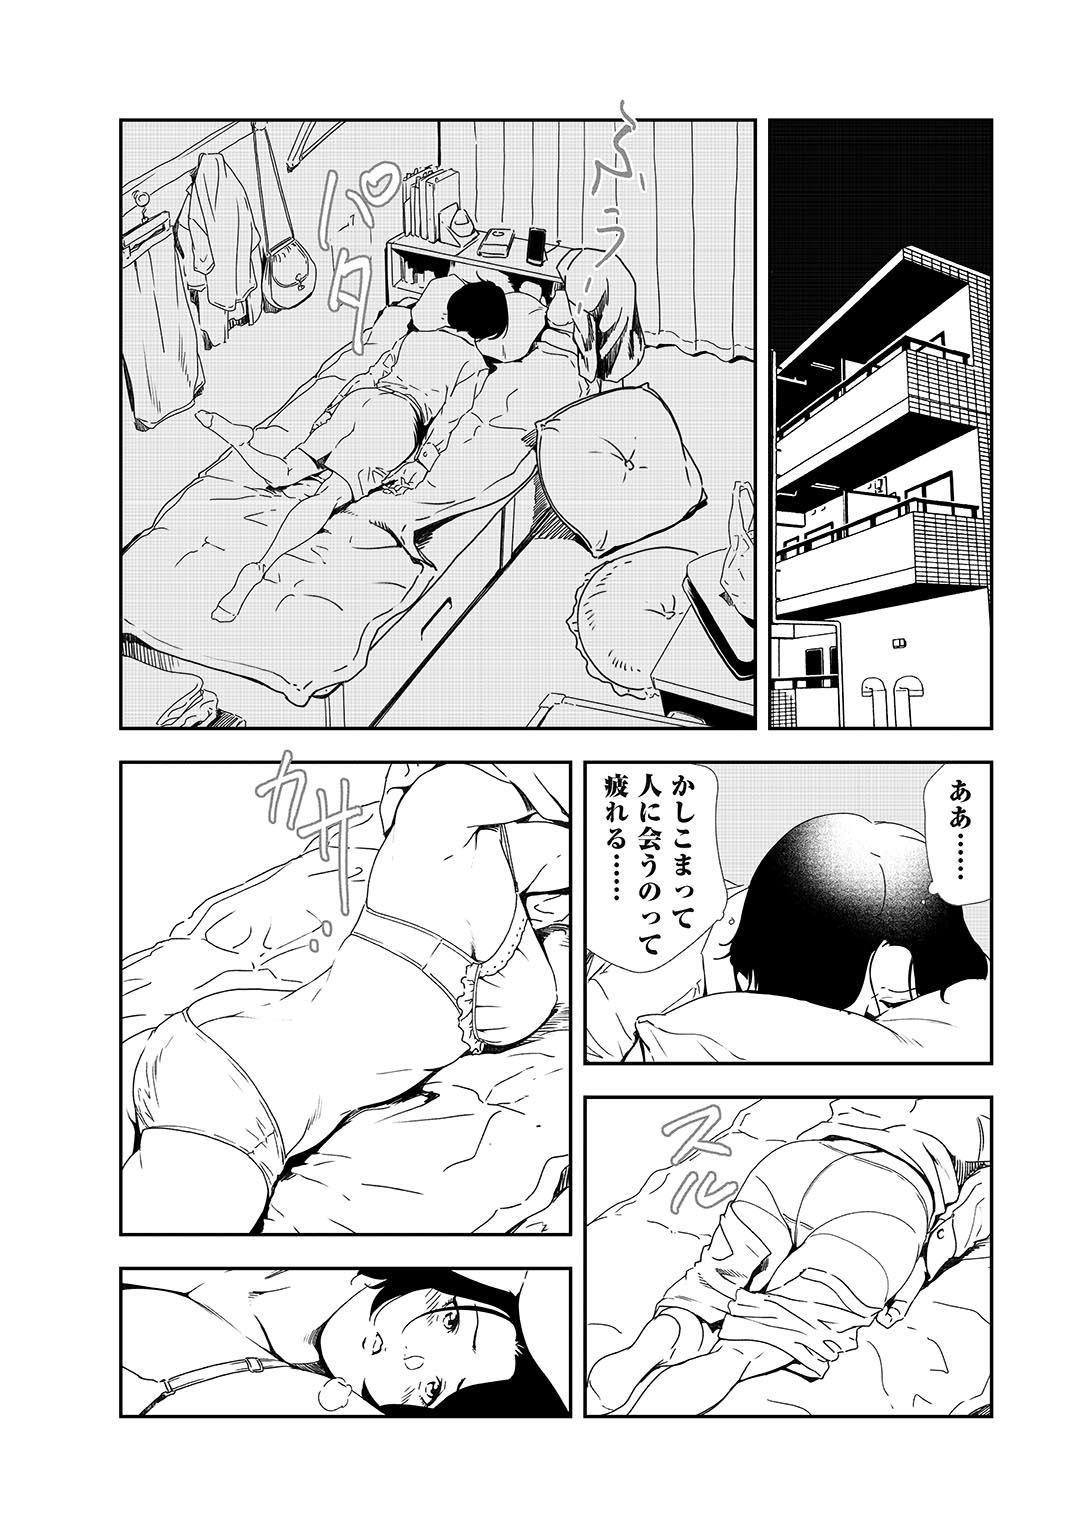 Thong Nikuhisyo Yukiko 36 Tributo - Page 10